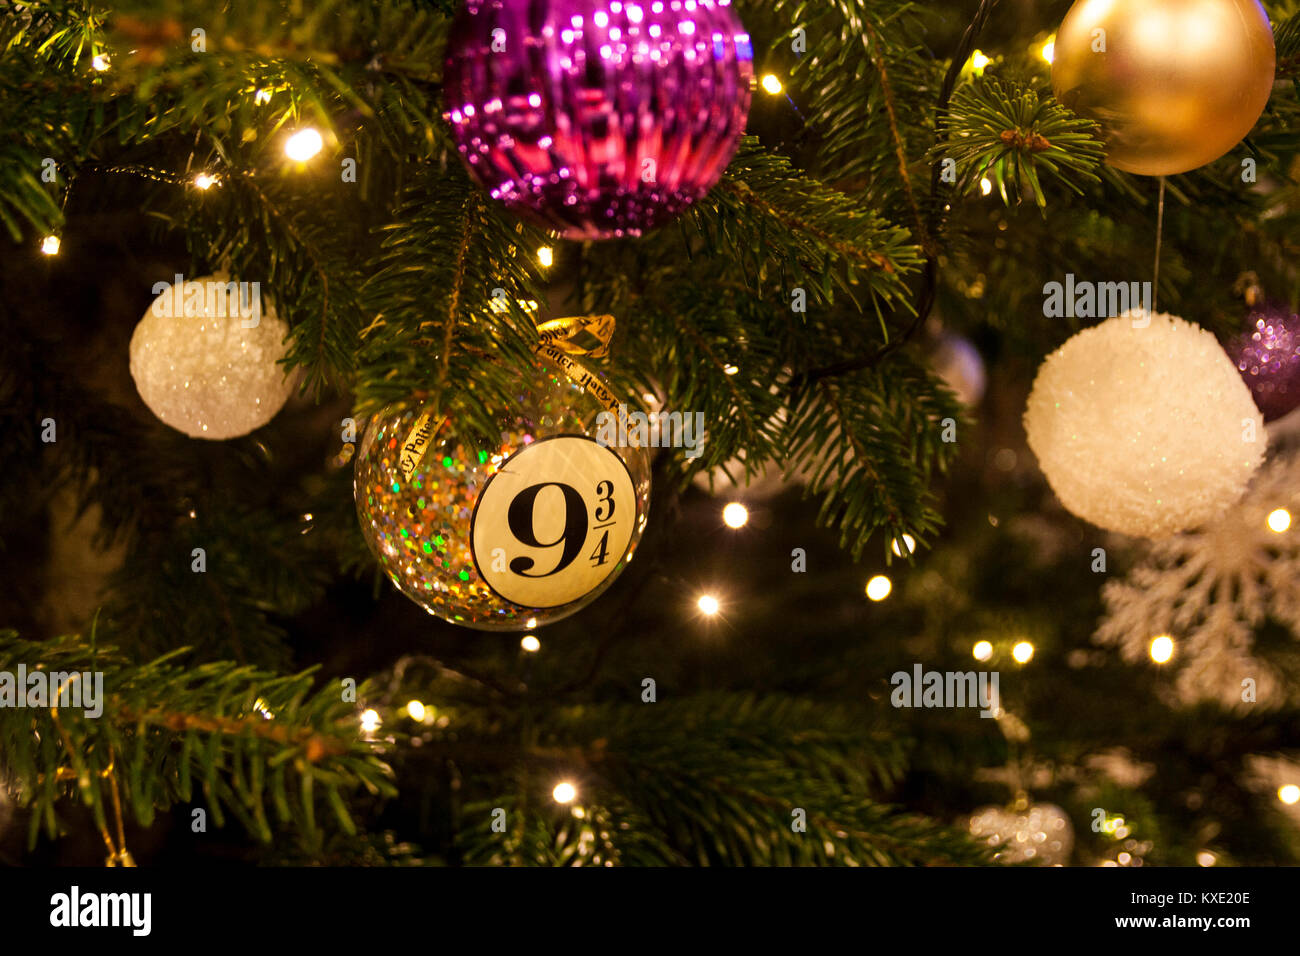 Arbre de Noël, Décorations de Noël, harry potter magic décoration concept plate-forme 9 3/4 Banque D'Images